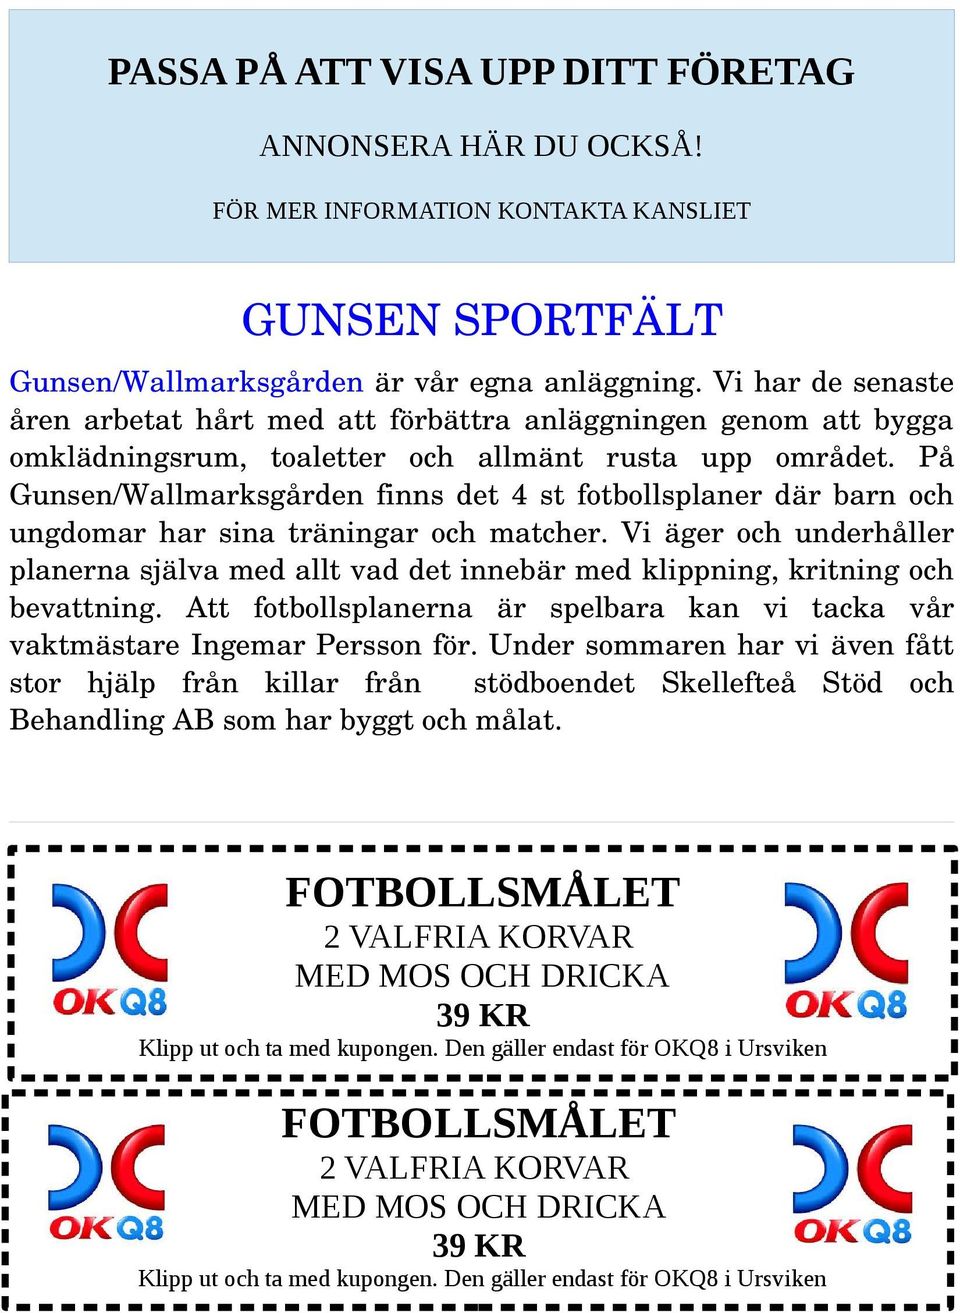 På Gunsen/Wallmarksgården finns det 4 st fotbollsplaner där barn och ungdomar har sina träningar och matcher.